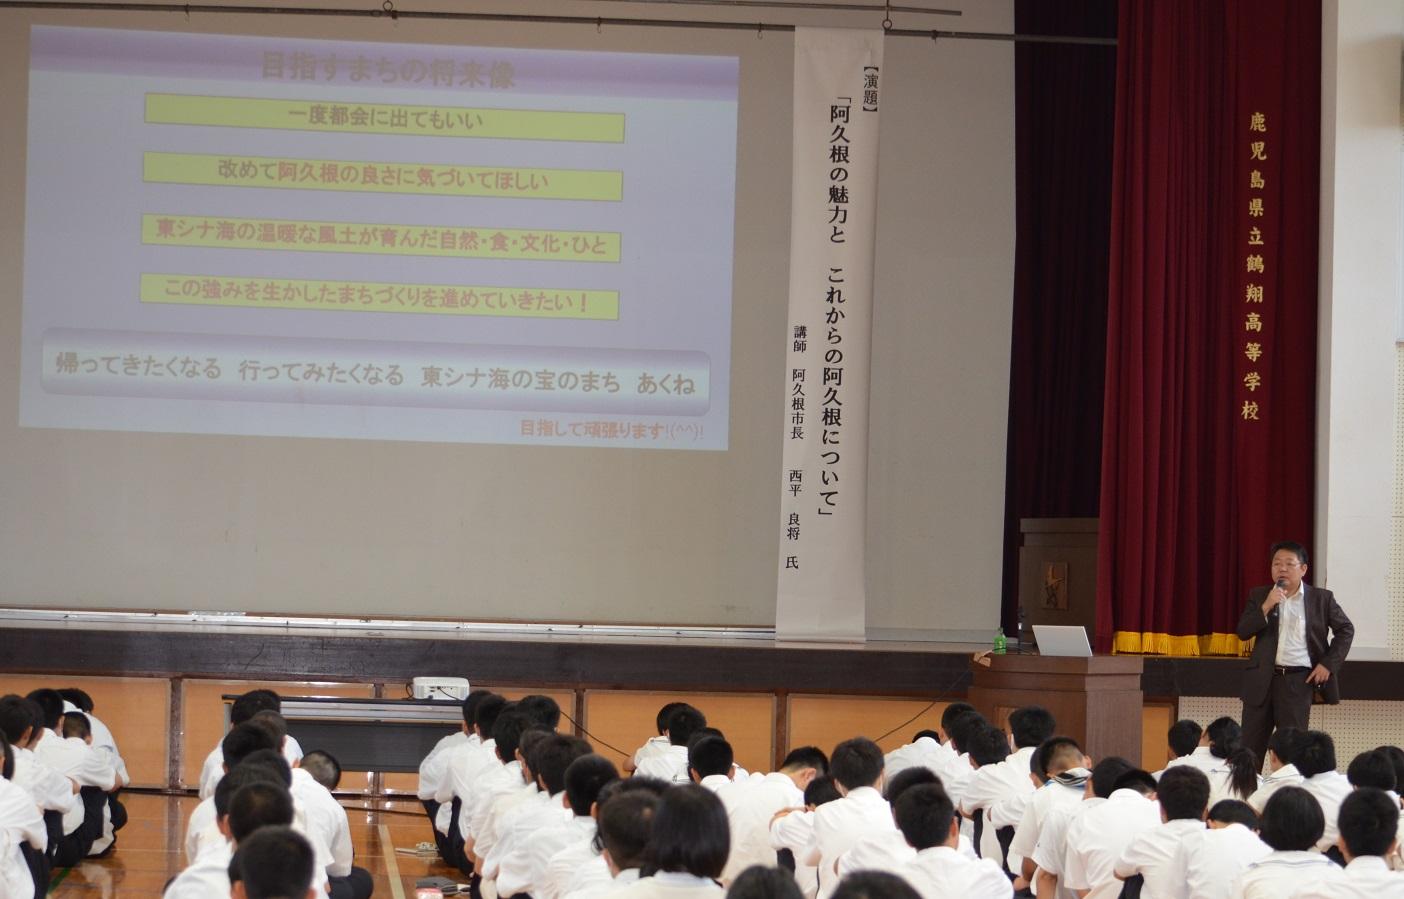 鶴翔高等学校において全校生徒を対象も講演をおこなう西平市長の写真